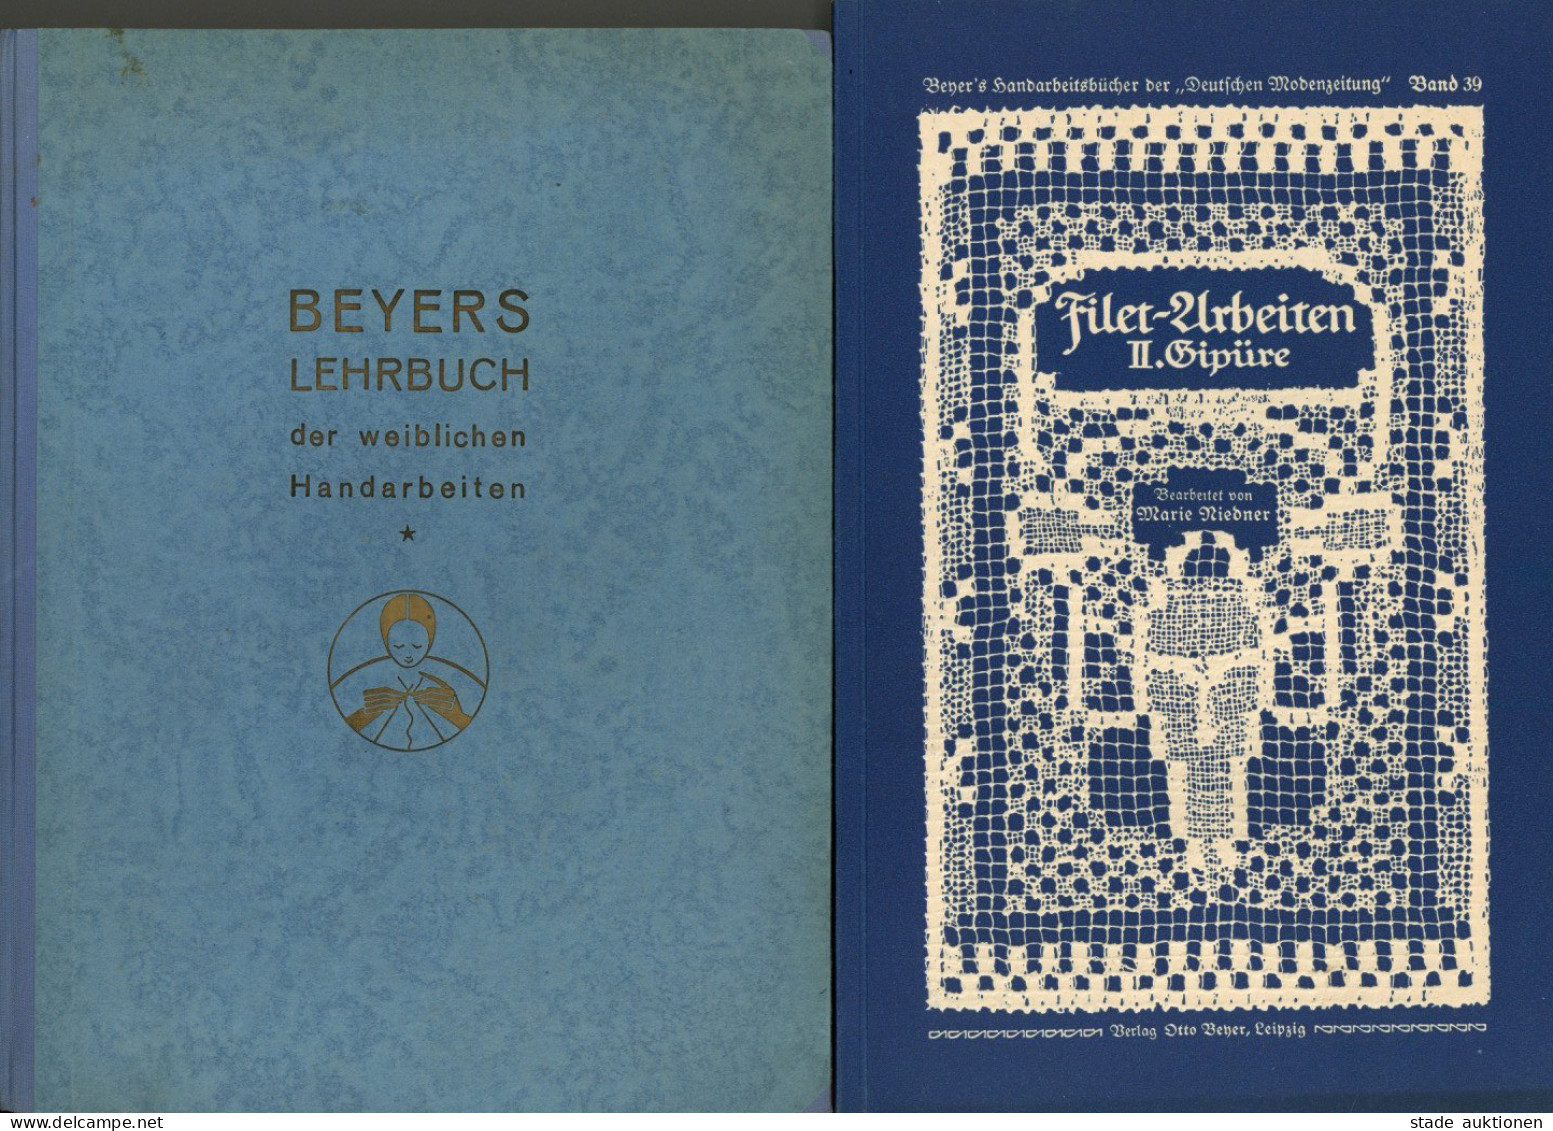 2 Bücher Beyers Lehrbuch Der Weiblichen Handarbeit 1939 Und Filet-Arbeiten II. Gipüre 1915, Verlag Beyer Leipzig, über 3 - Koehler, Mela